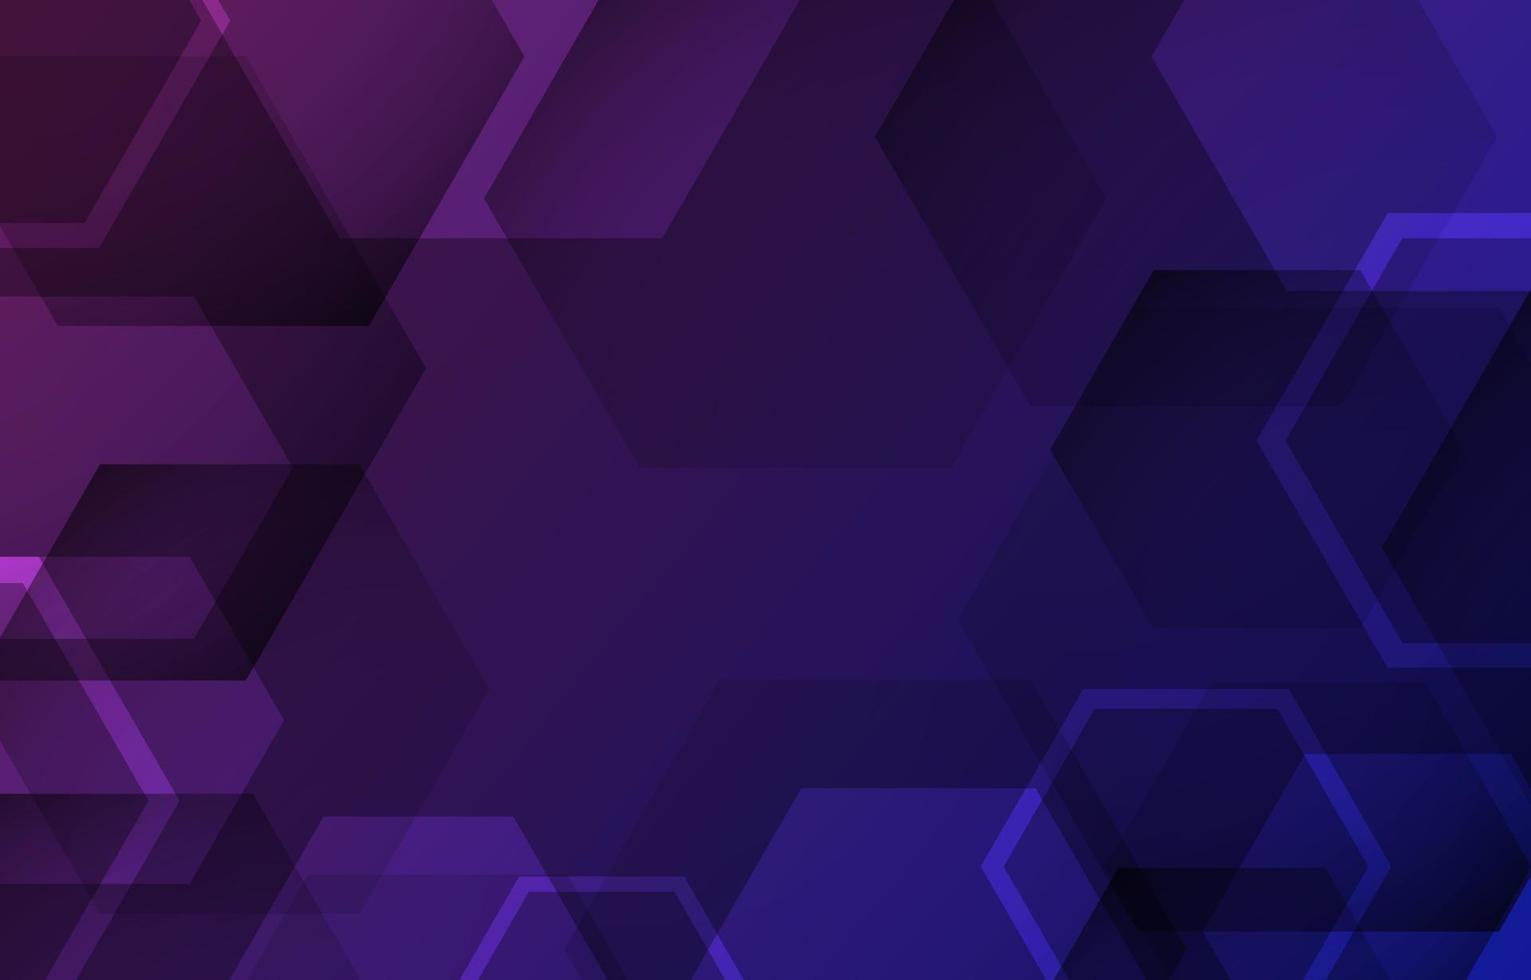 technologie hexagone abstrait design bleu violet dégradé fond sombre. grille de texture en nid d'abeille de toile de fond géométrique. hexagonal dans l'illustration vectorielle de fond futuriste de la technologie moderne. vecteur